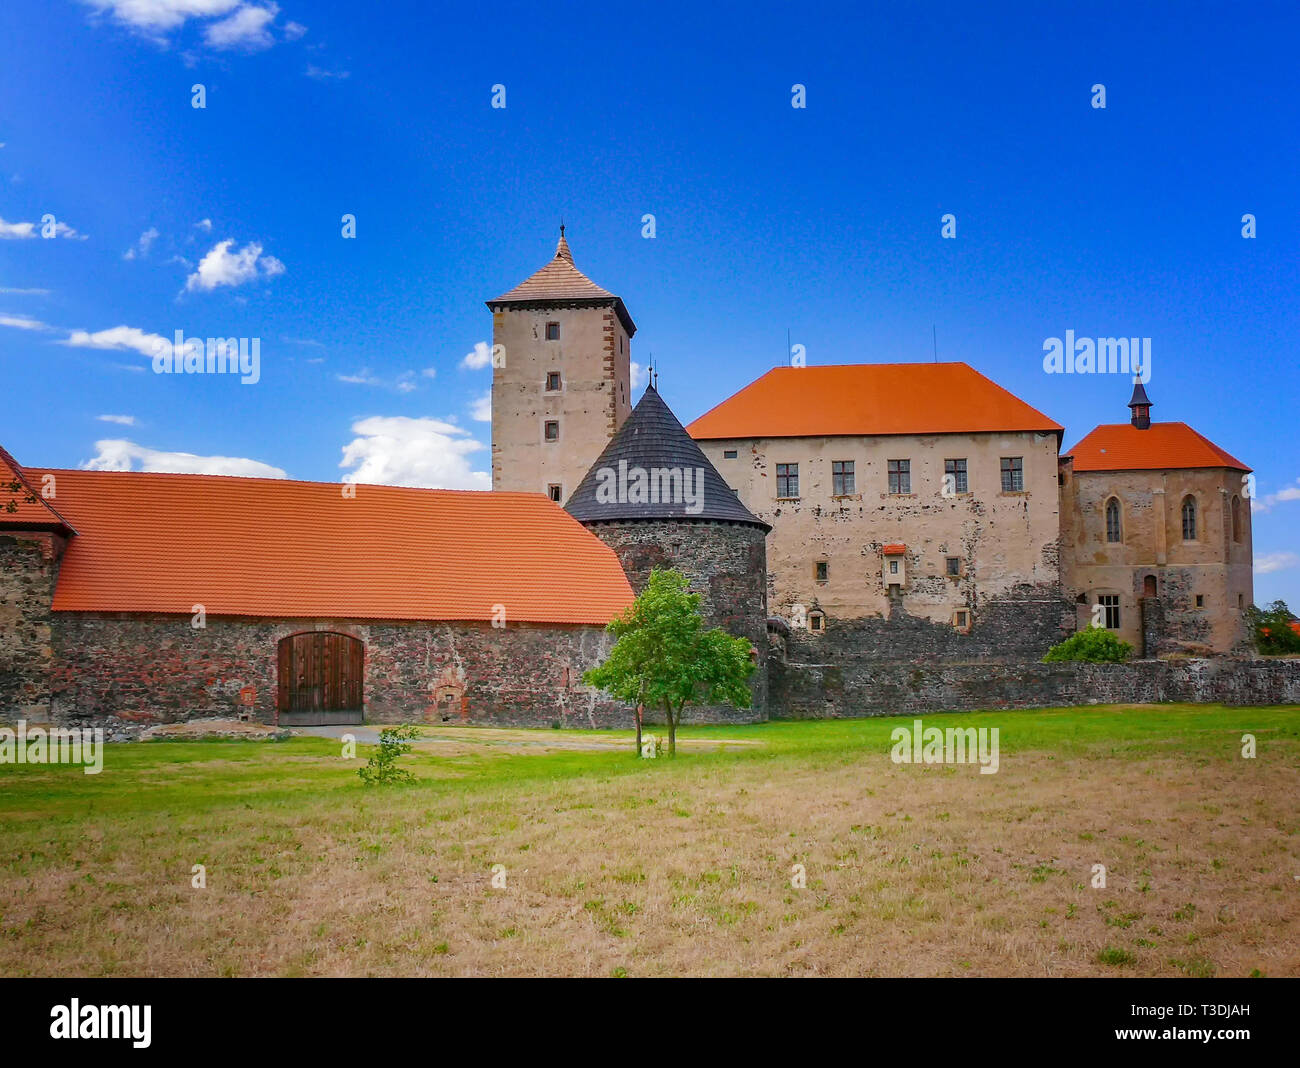 L'eau château de Svihov est situé dans la région de Pilsen, République Tchèque, Europe. Il y a canal d'eau autour du château en pierre. C'est château de la pierre Banque D'Images